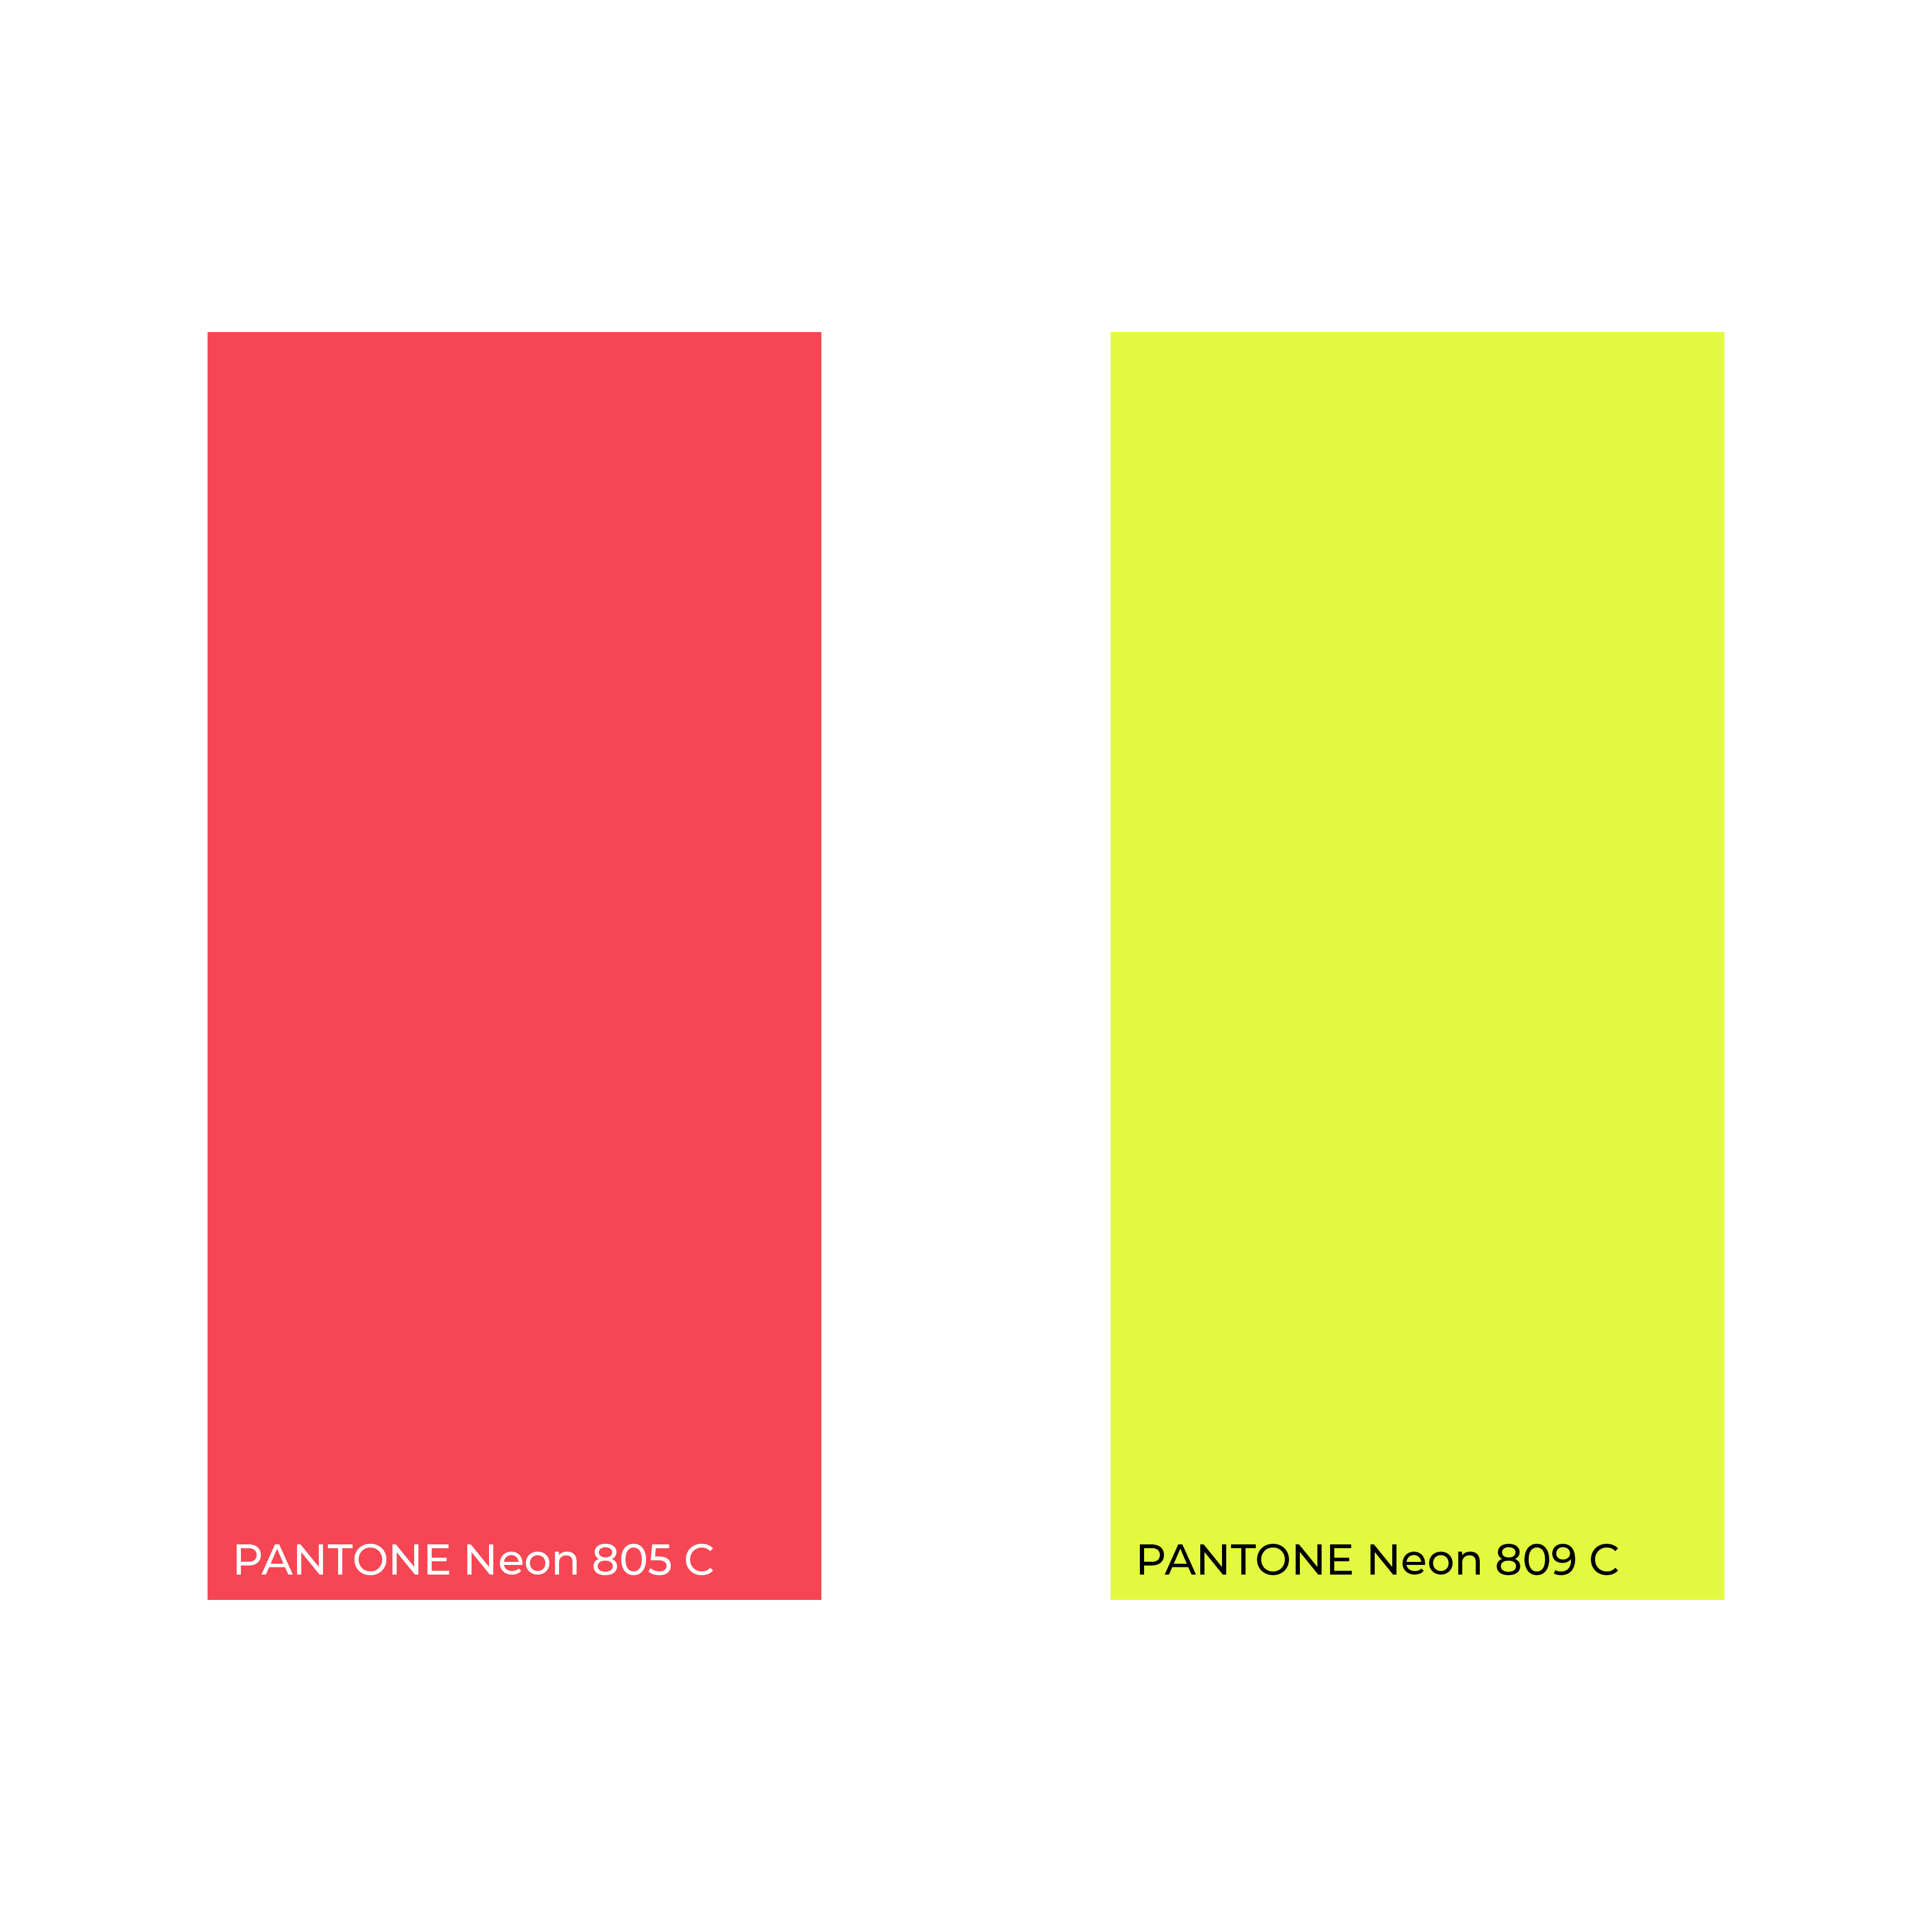 NOFOMO colour palette-unique brand identity